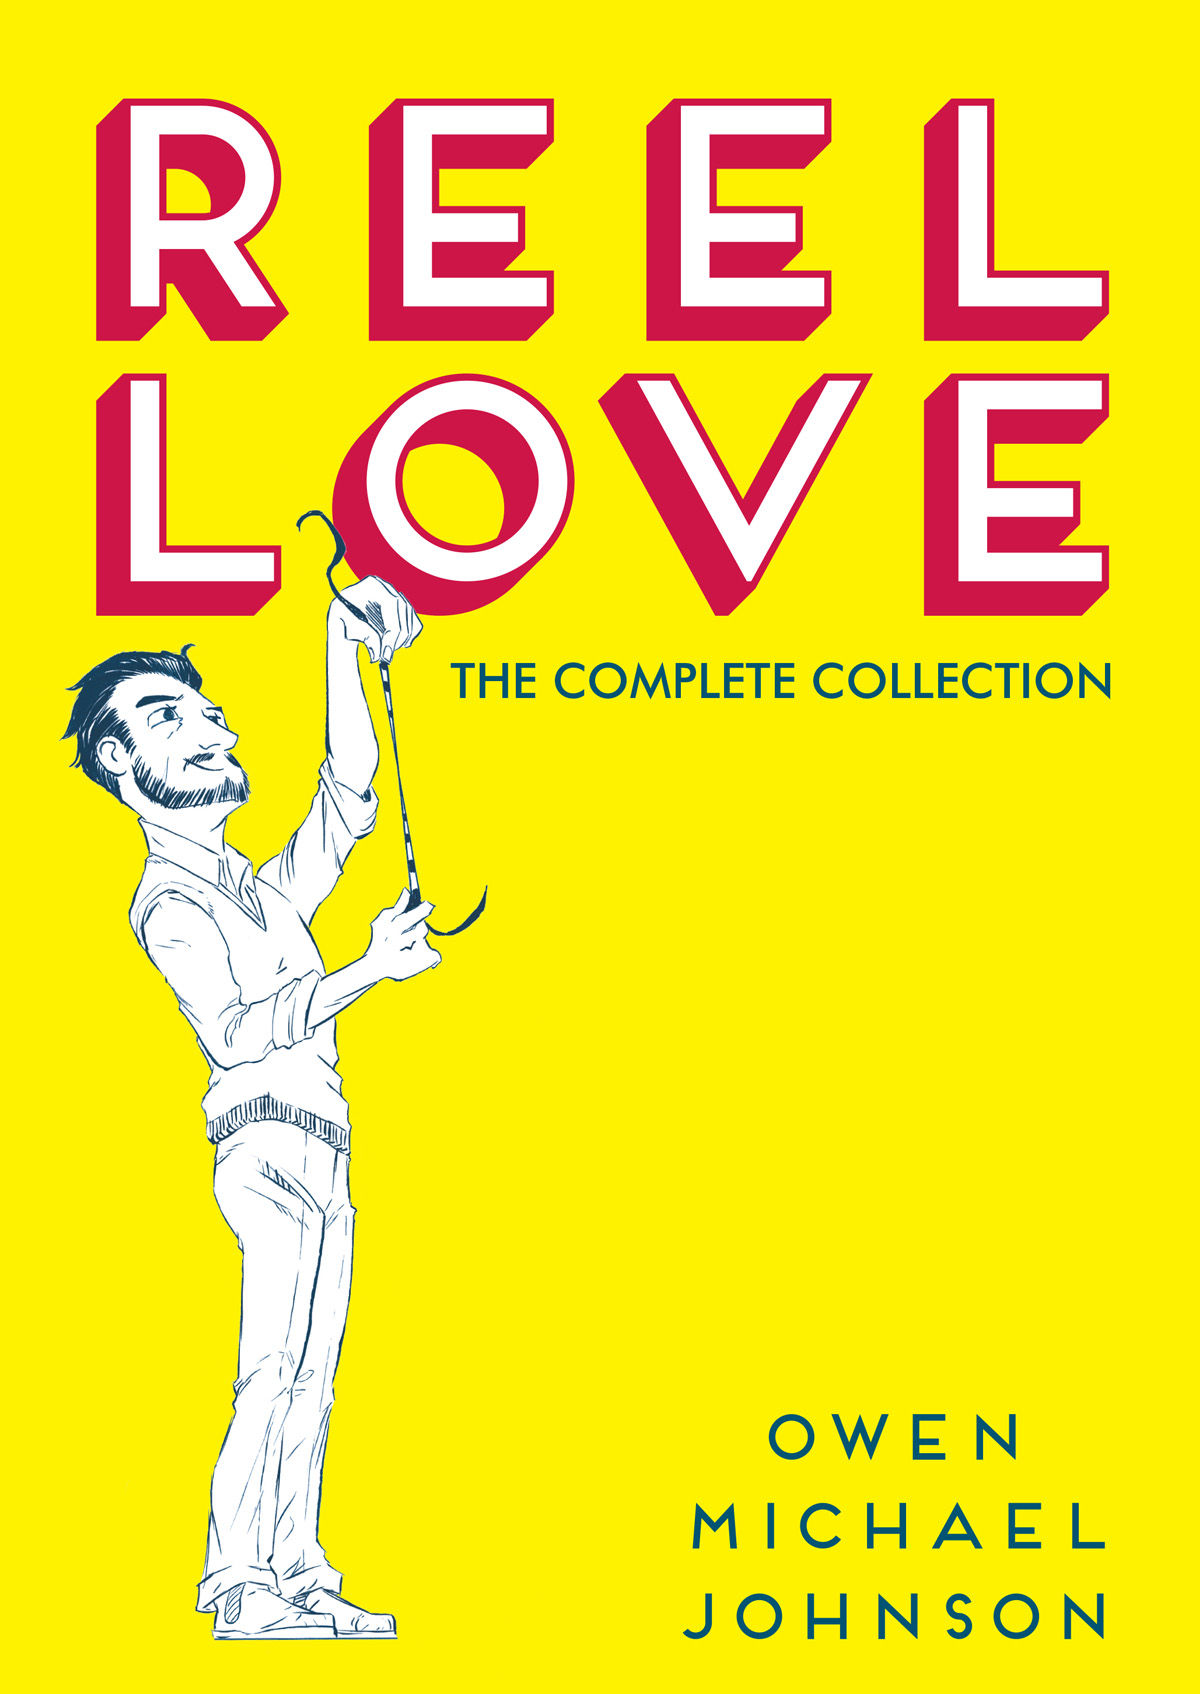 Reel Love Hardcover Graphic Novel